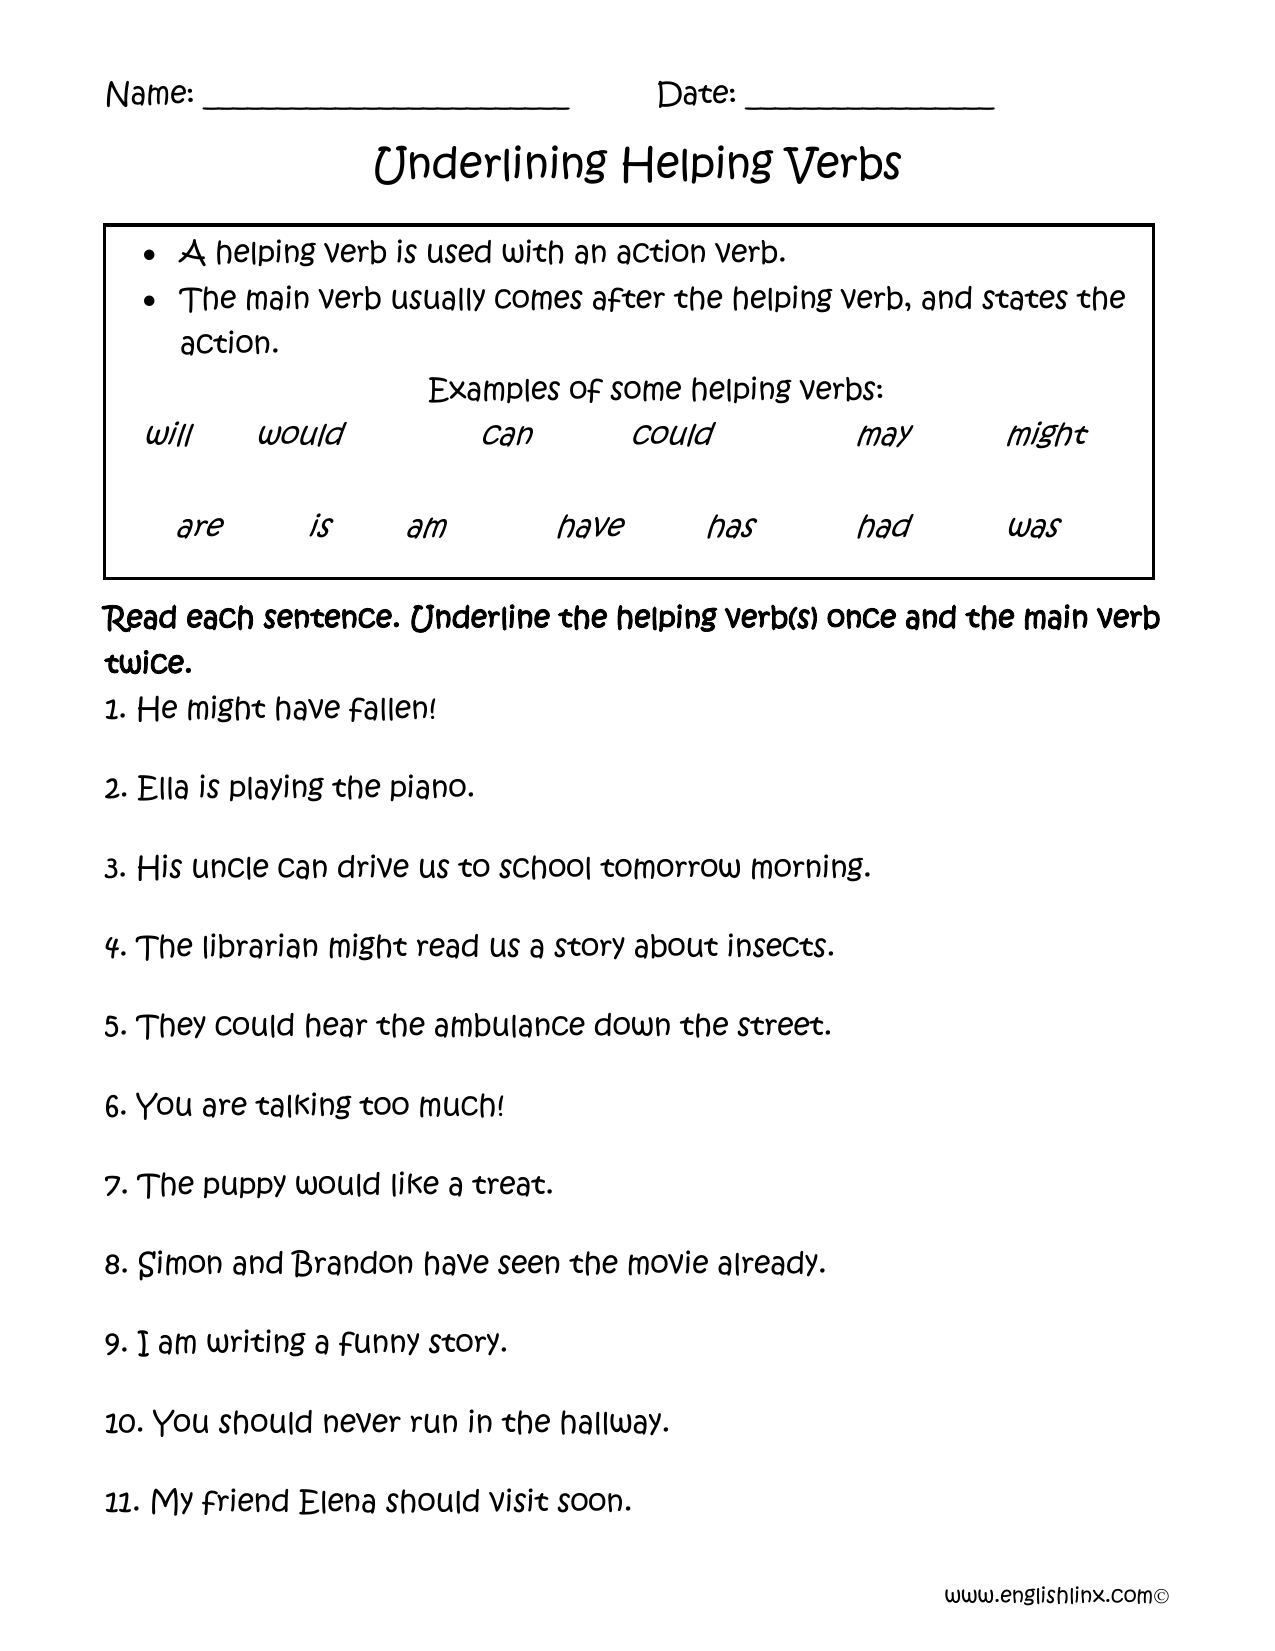 Underlining Helping Verbs Worksheet